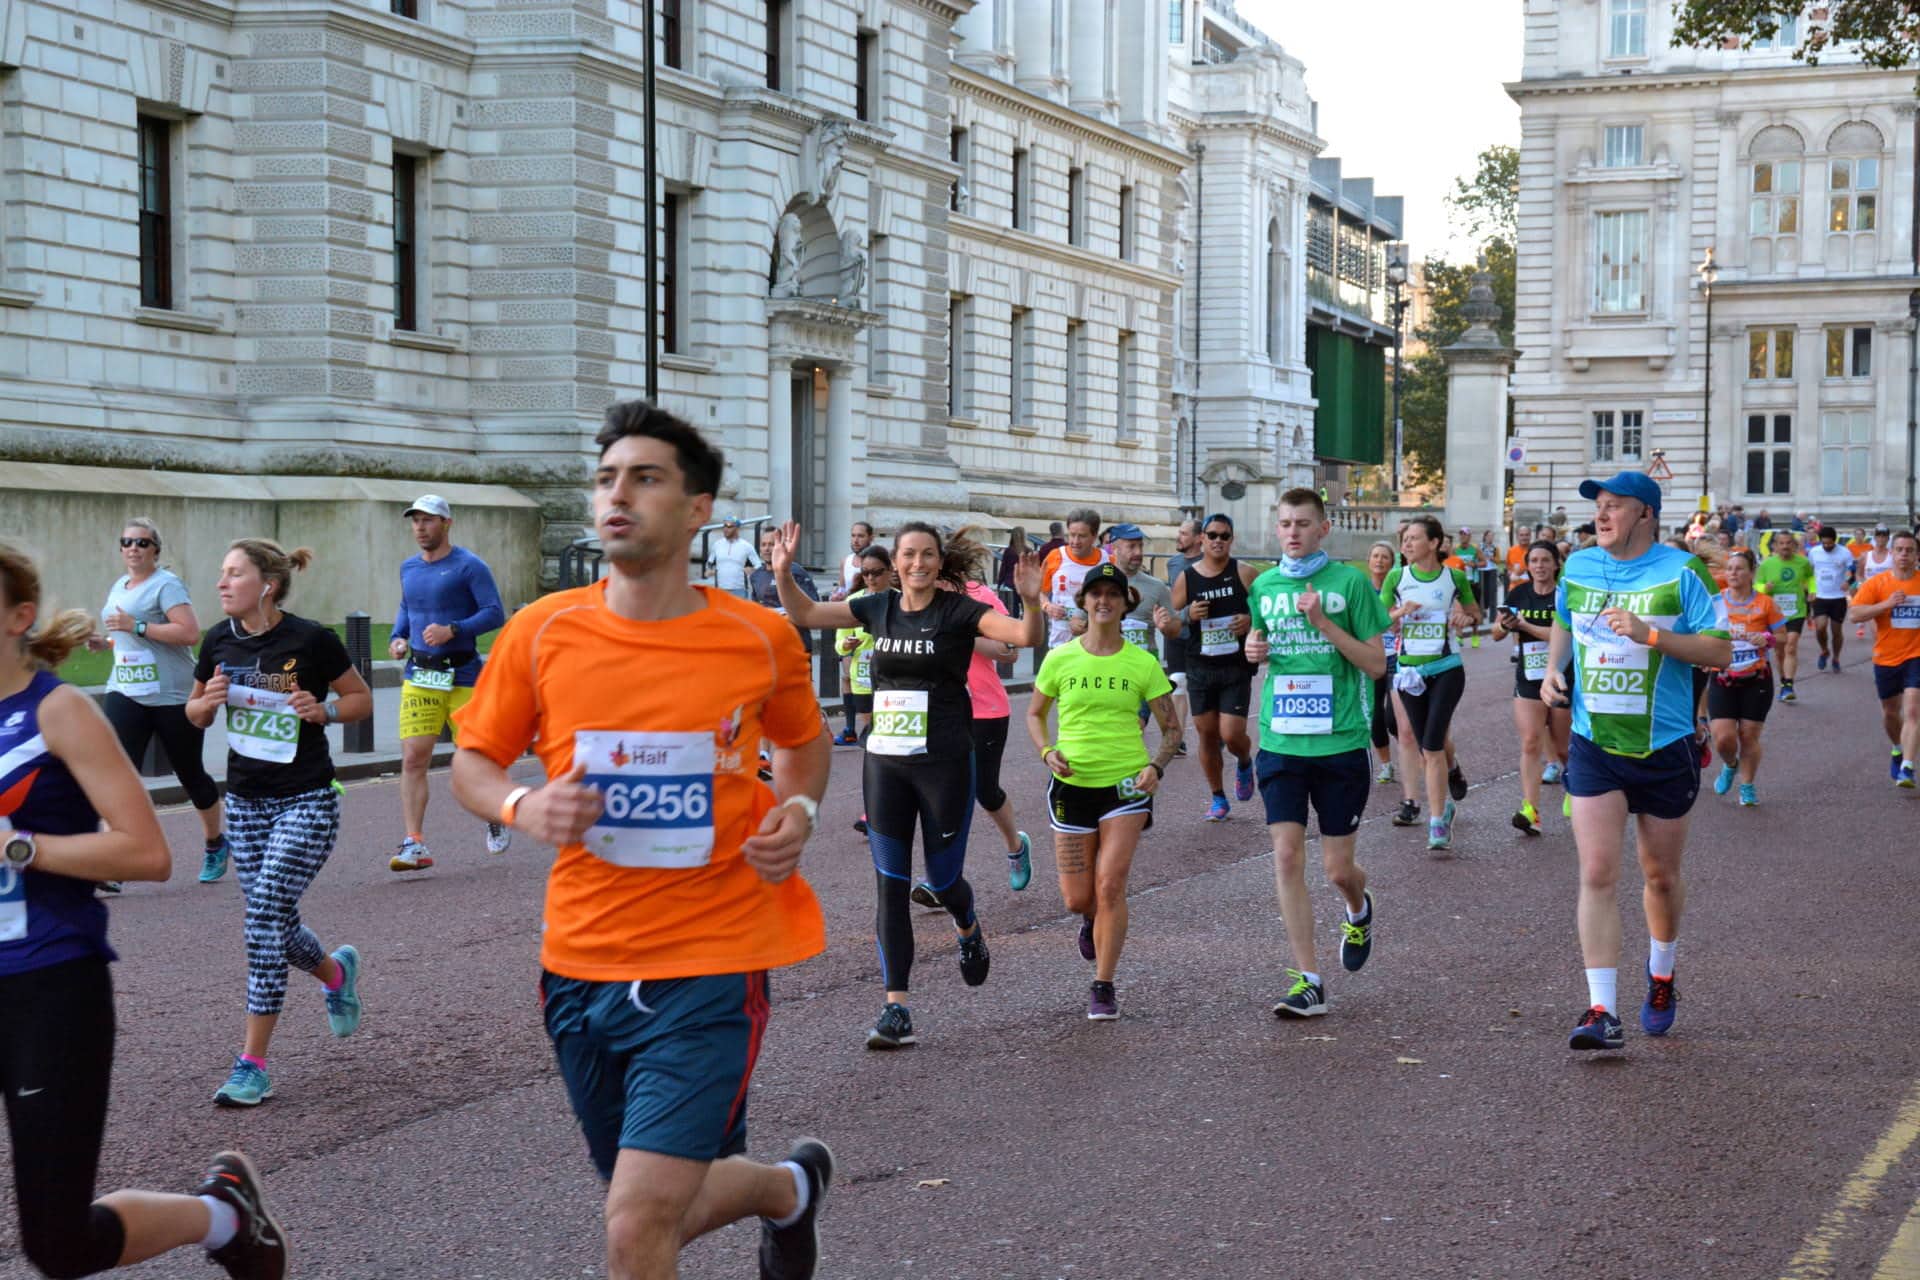 Royal Parks Half Marathon with Nike